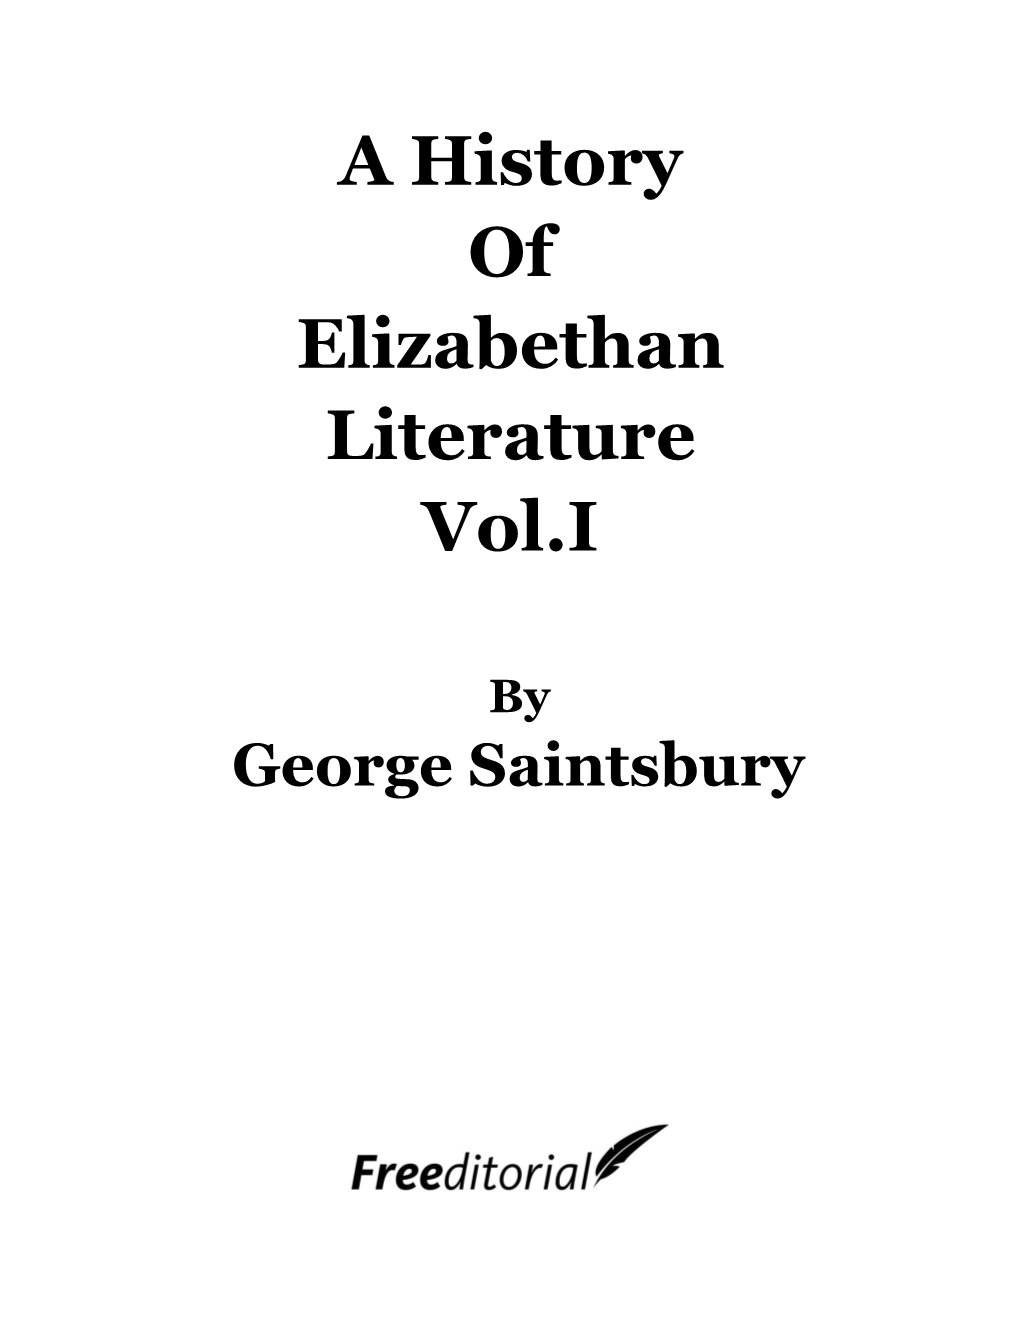 A History of Elizabethan Literature Vol.I